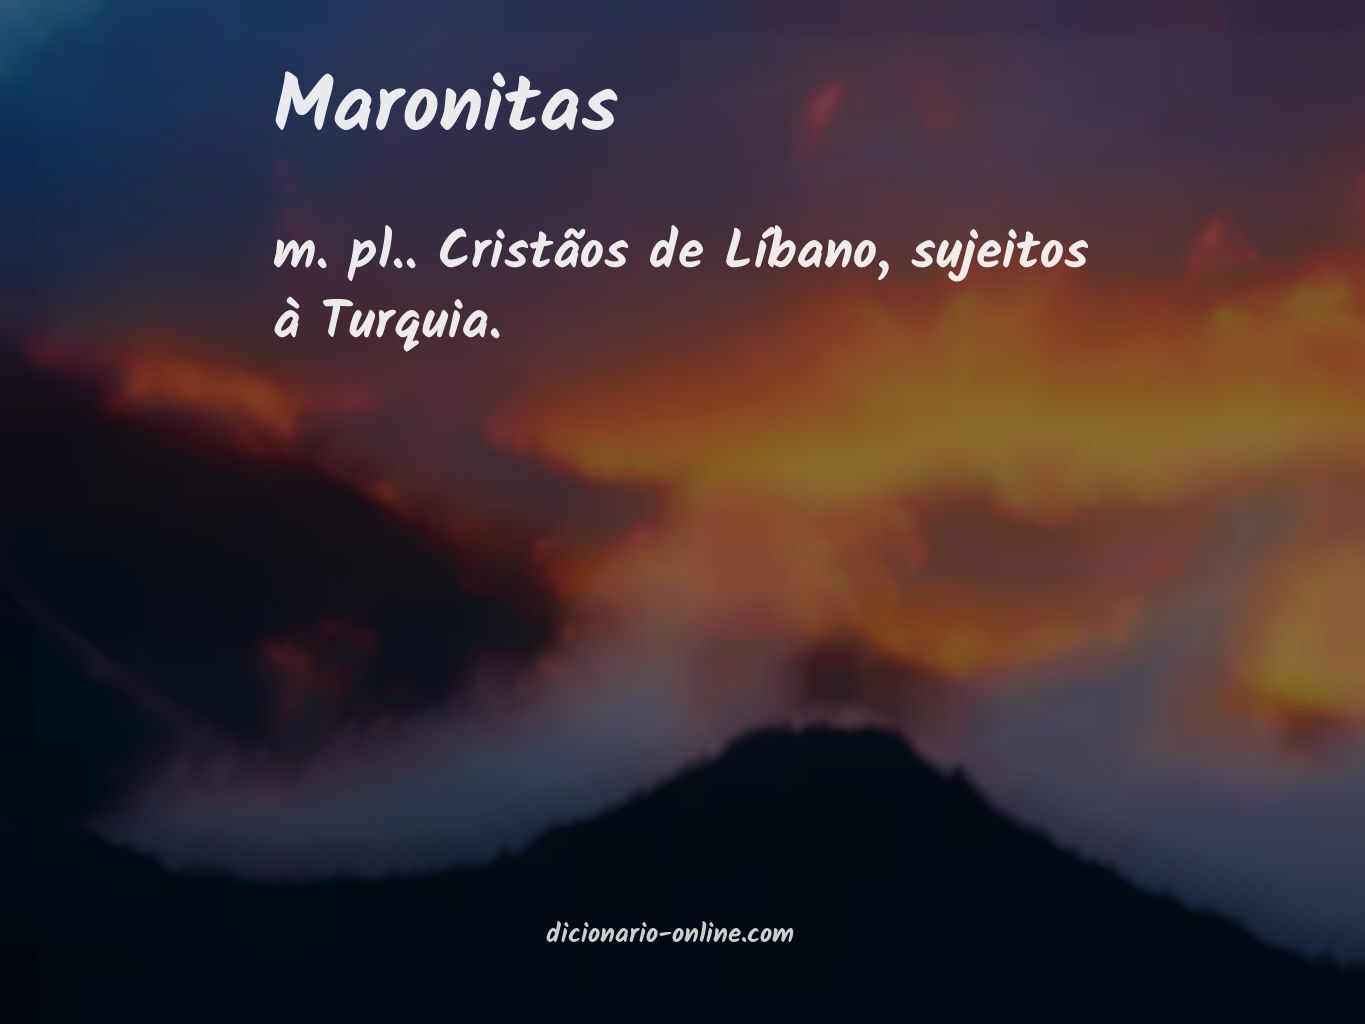 Significado de maronitas